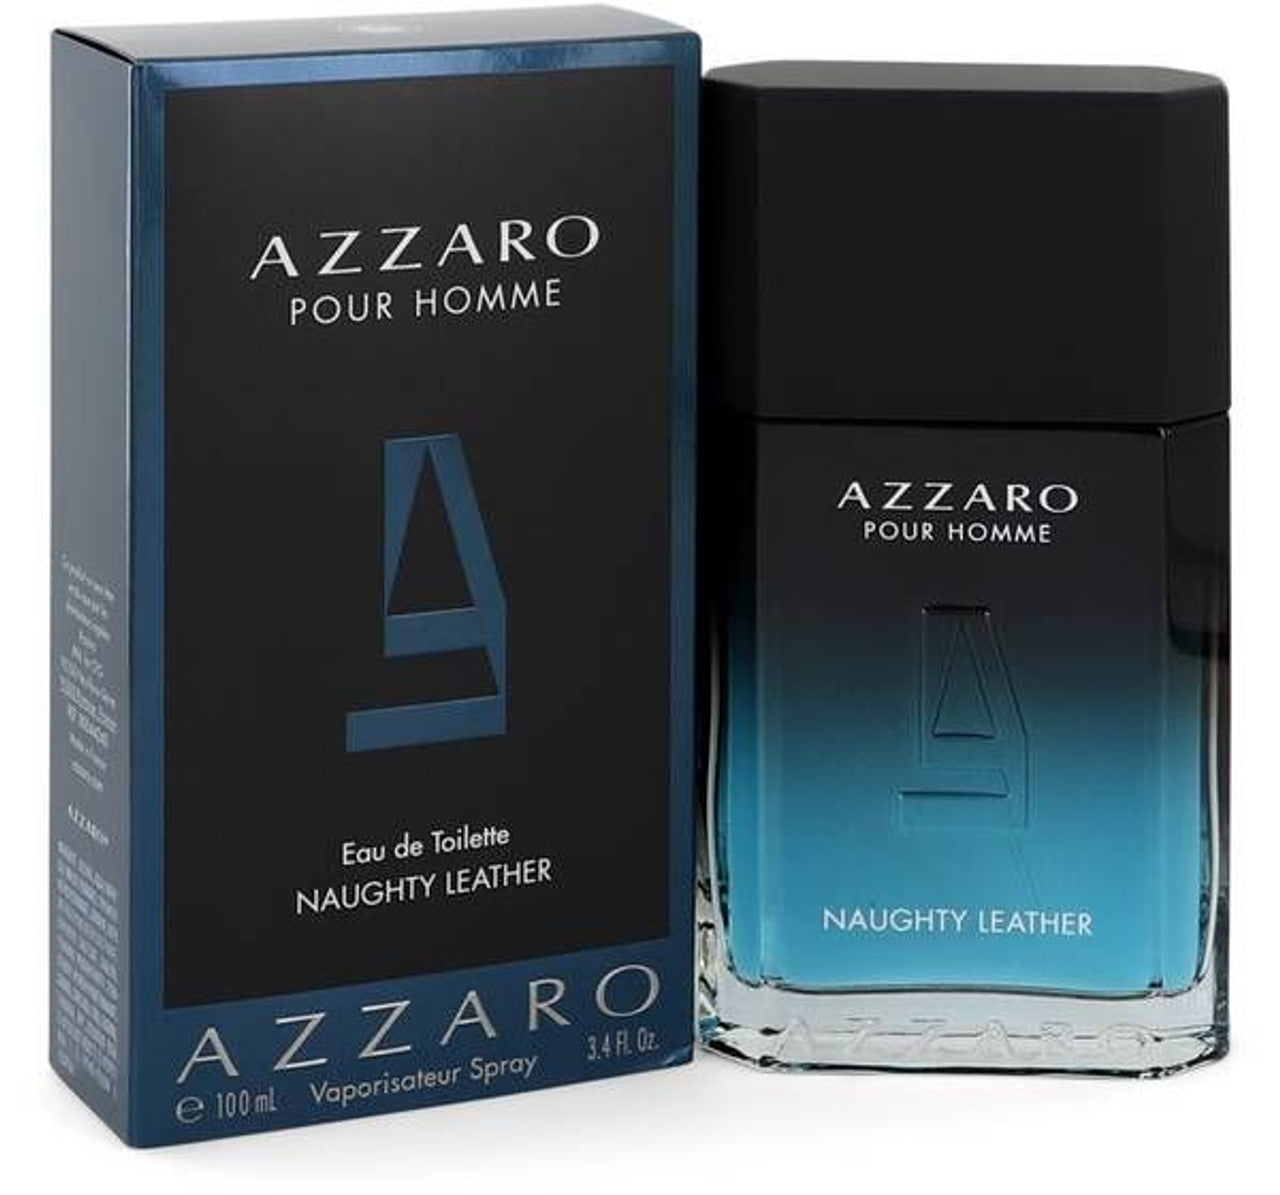 Azzaro Pour Homme Naugthy Leather 3.4 oz Eau De Toilette Spray